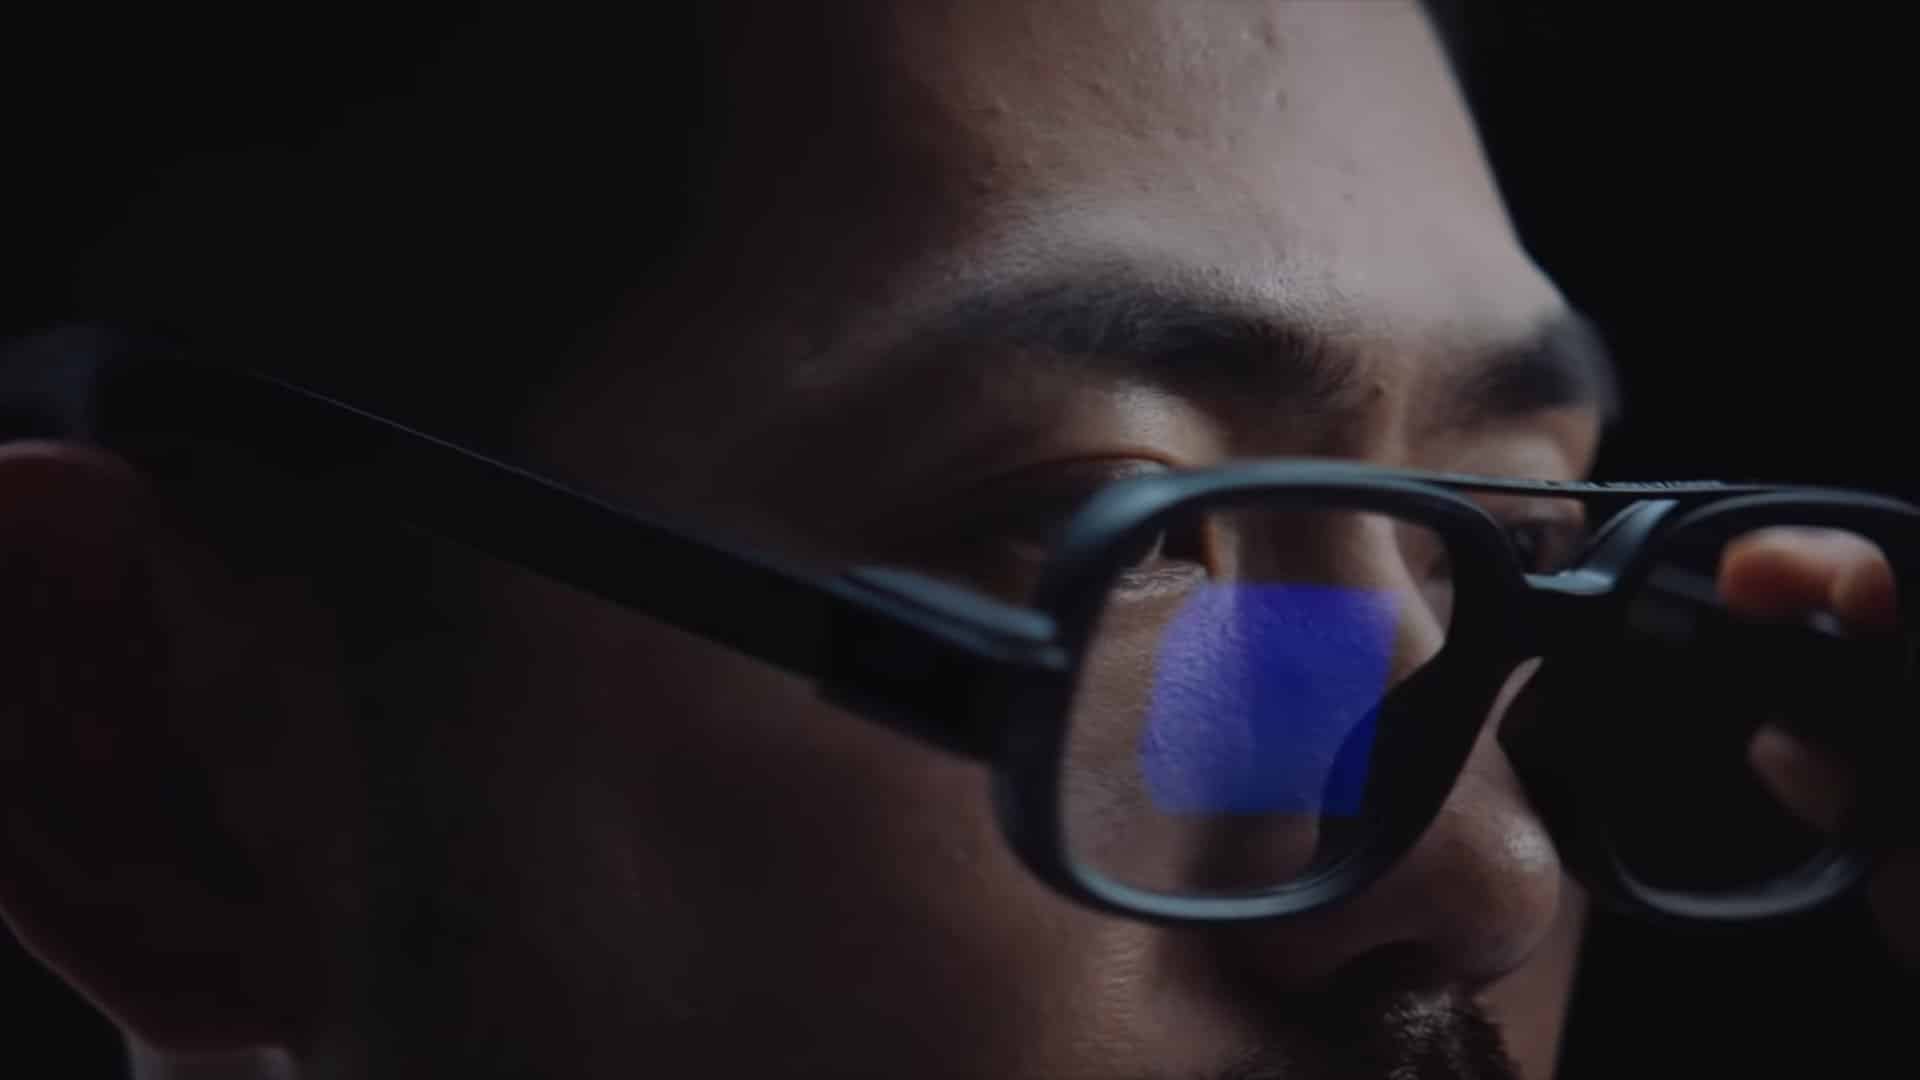 Xiaomi dévoile les lunettes connectées : Les Xiaomi Smart Glasses